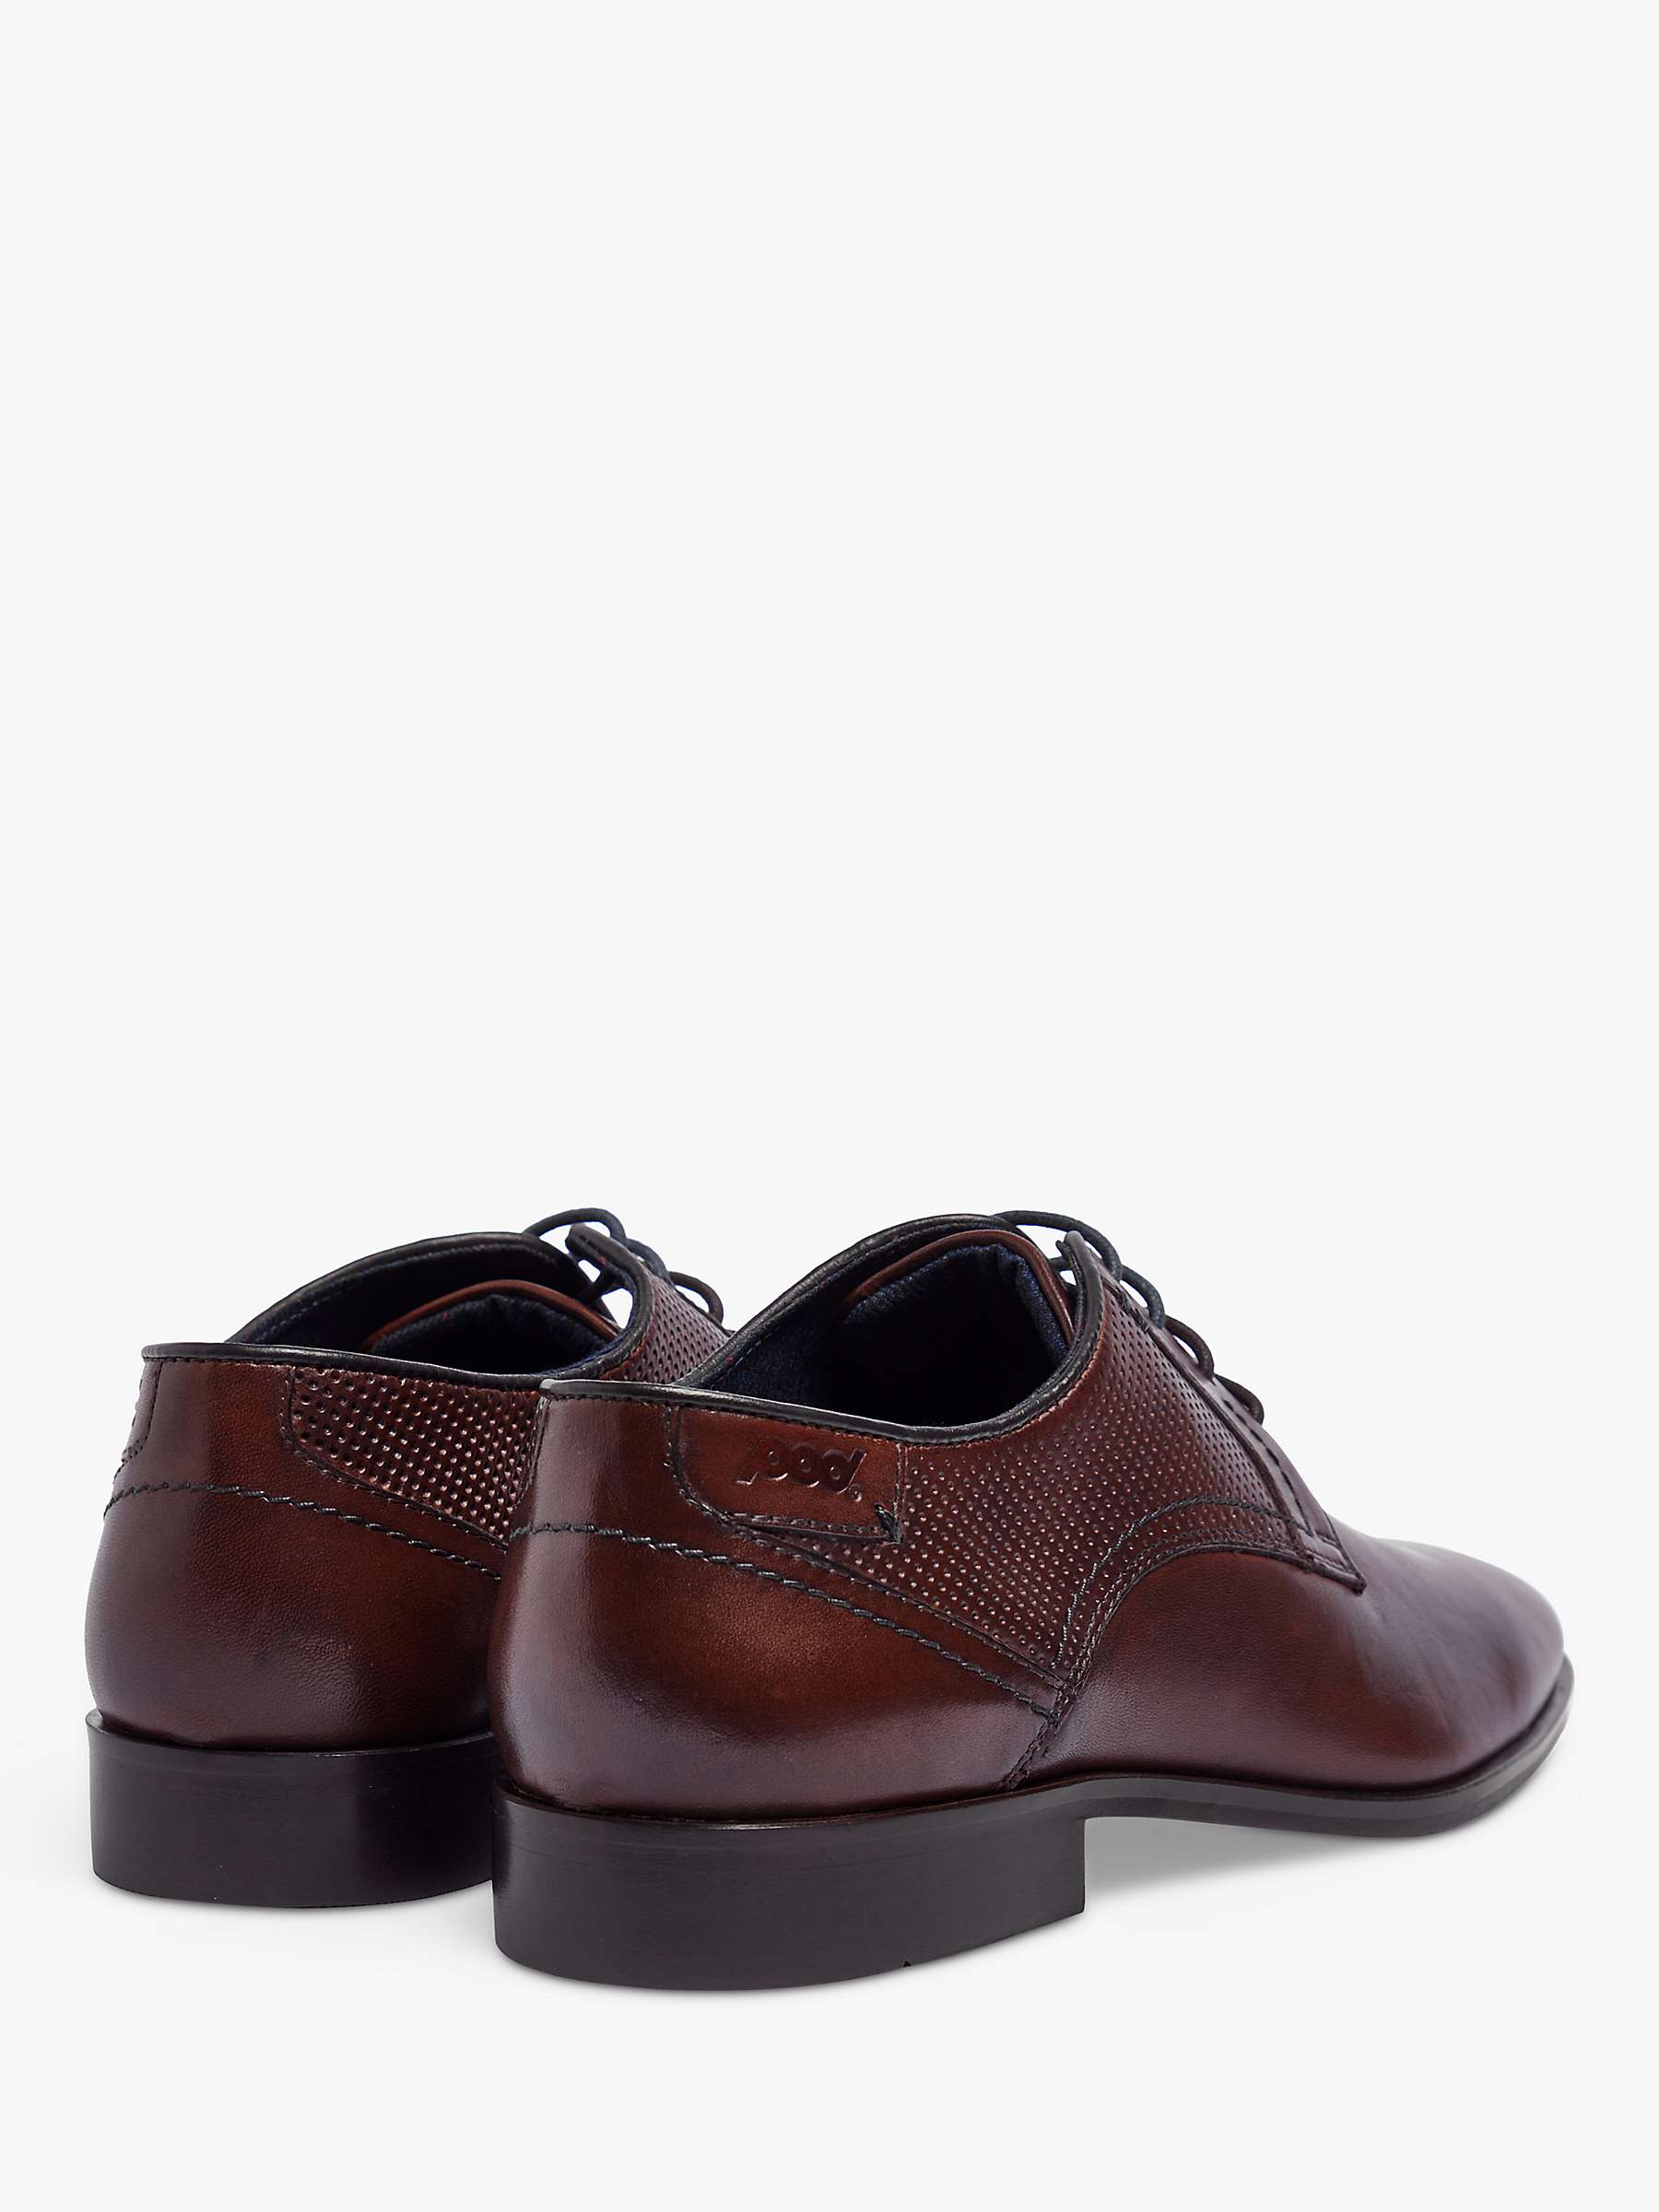 Buy Pod Denver Leather Derby Shoes Online at johnlewis.com